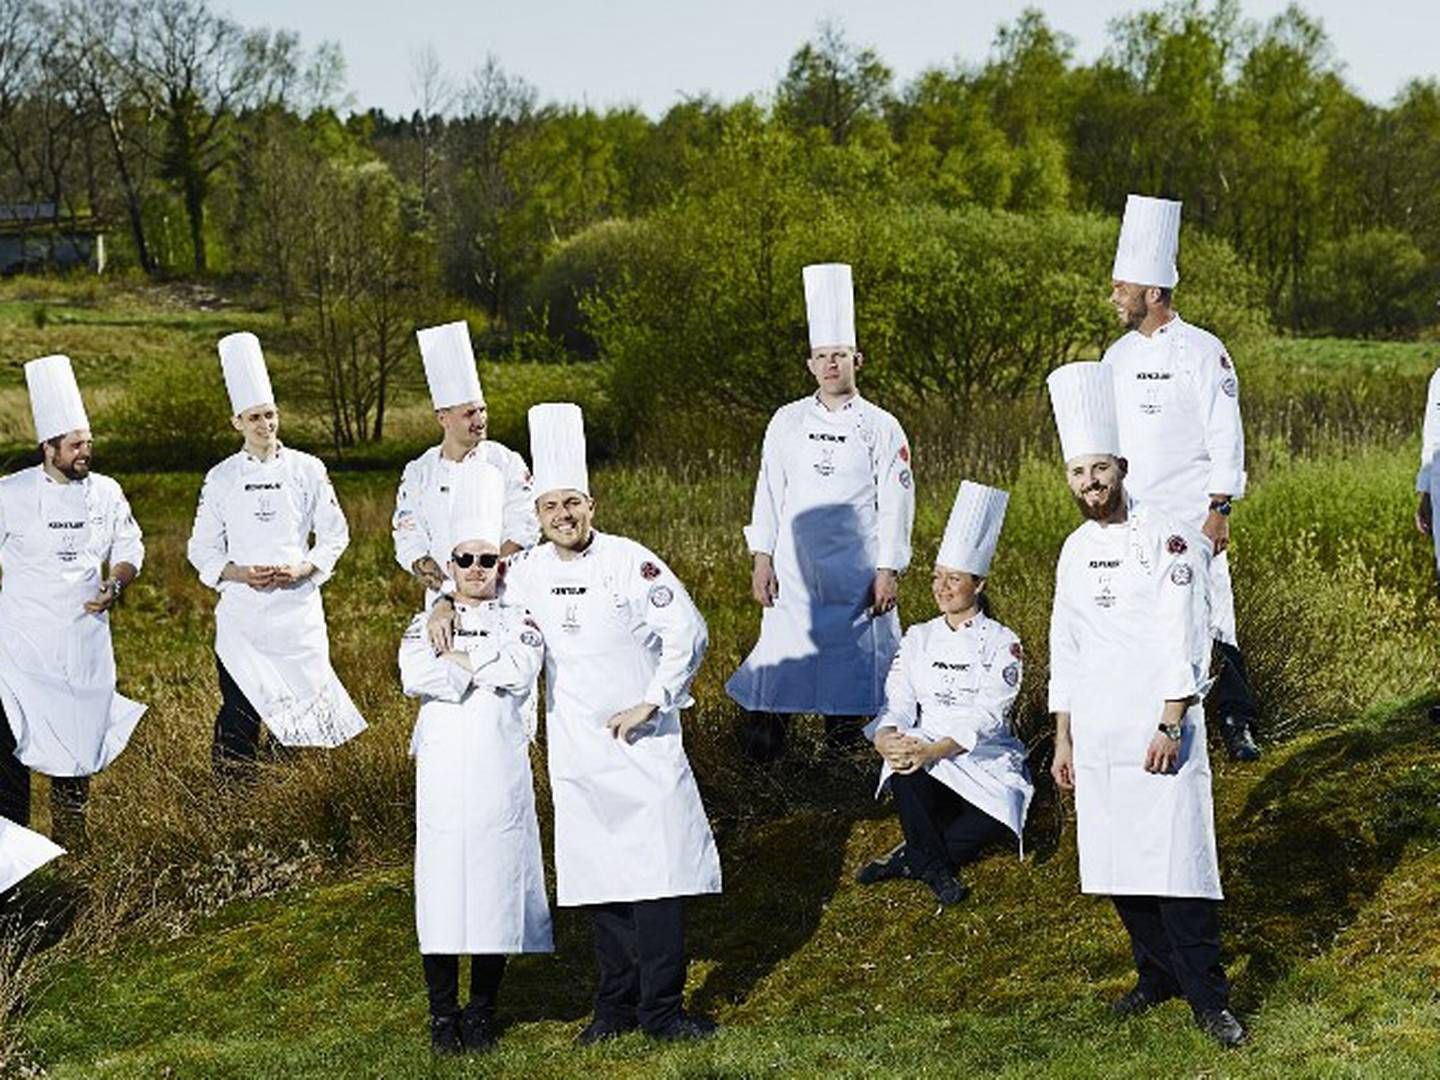 Det danske kokkelandshold stiller med repræsentanter fra både senior og junior holdet og sammen skal de 8 kokke tilberede festmiddag til deltagerne på konferencen. | Foto: PR-foto